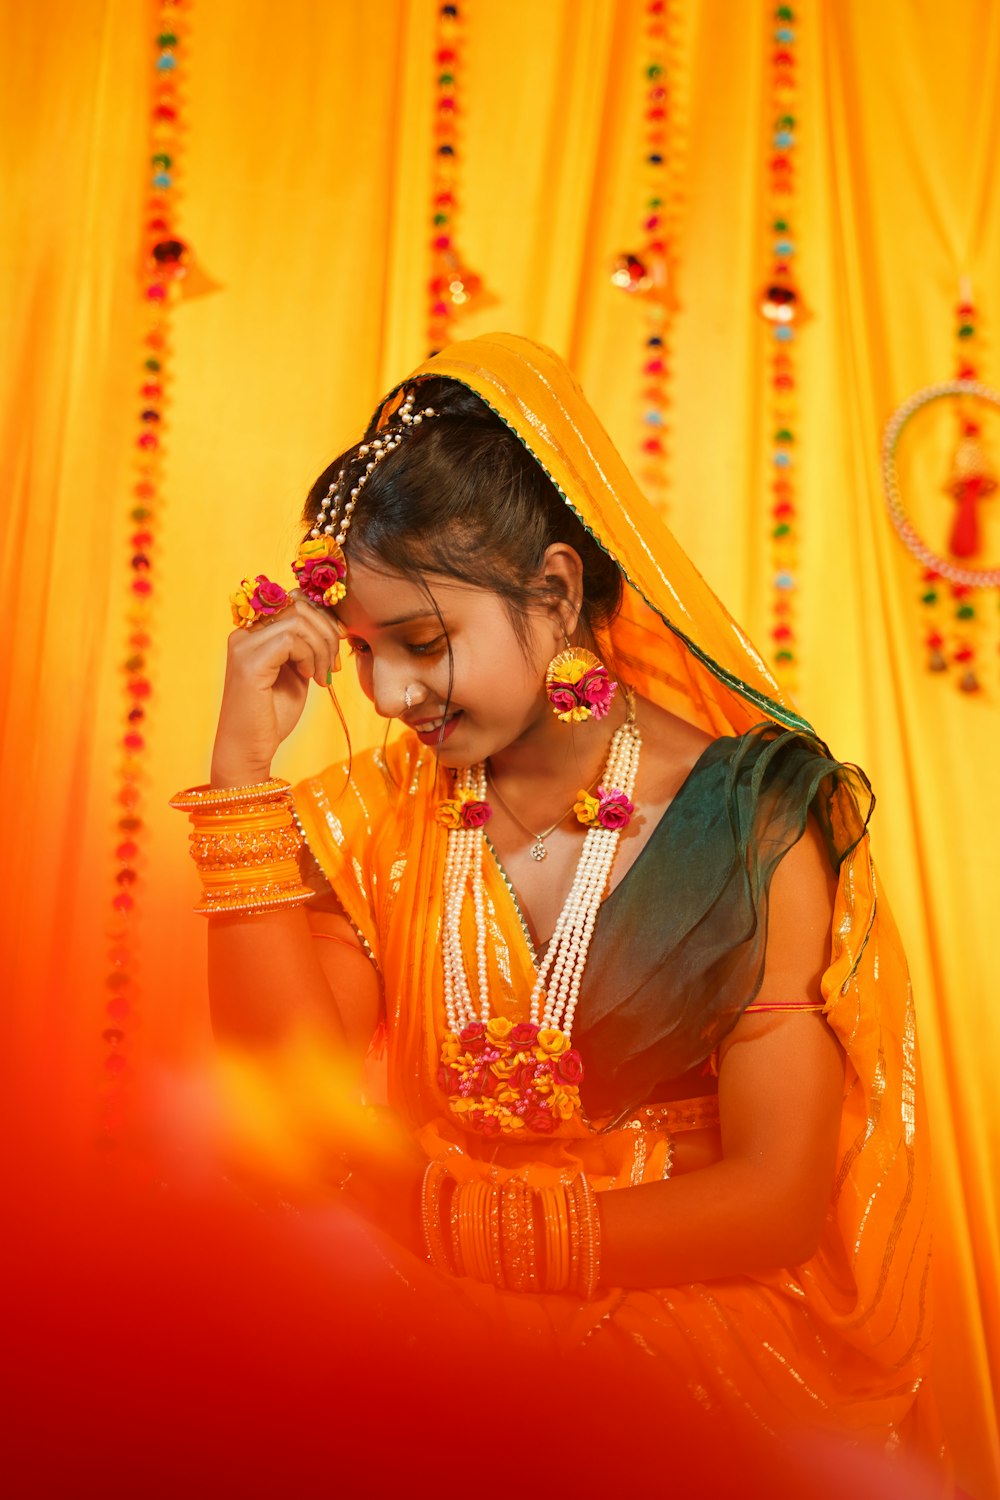 Una giovane ragazza vestita con un costume tradizionale indiano